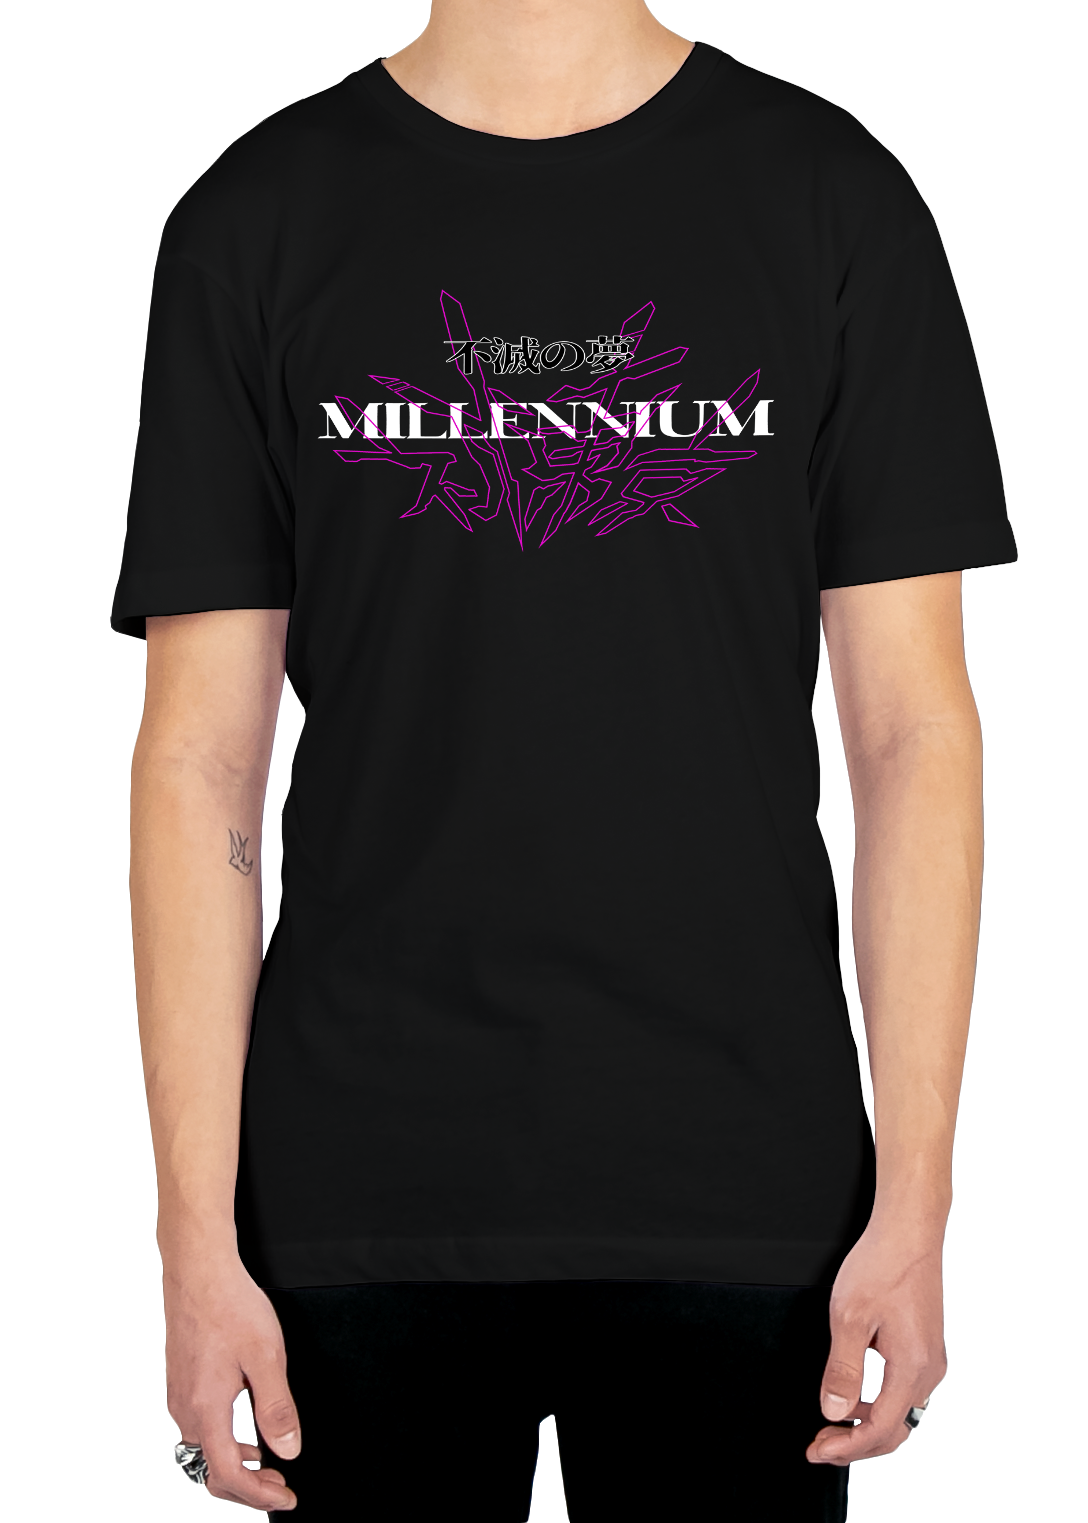 Millennium Dream Tee